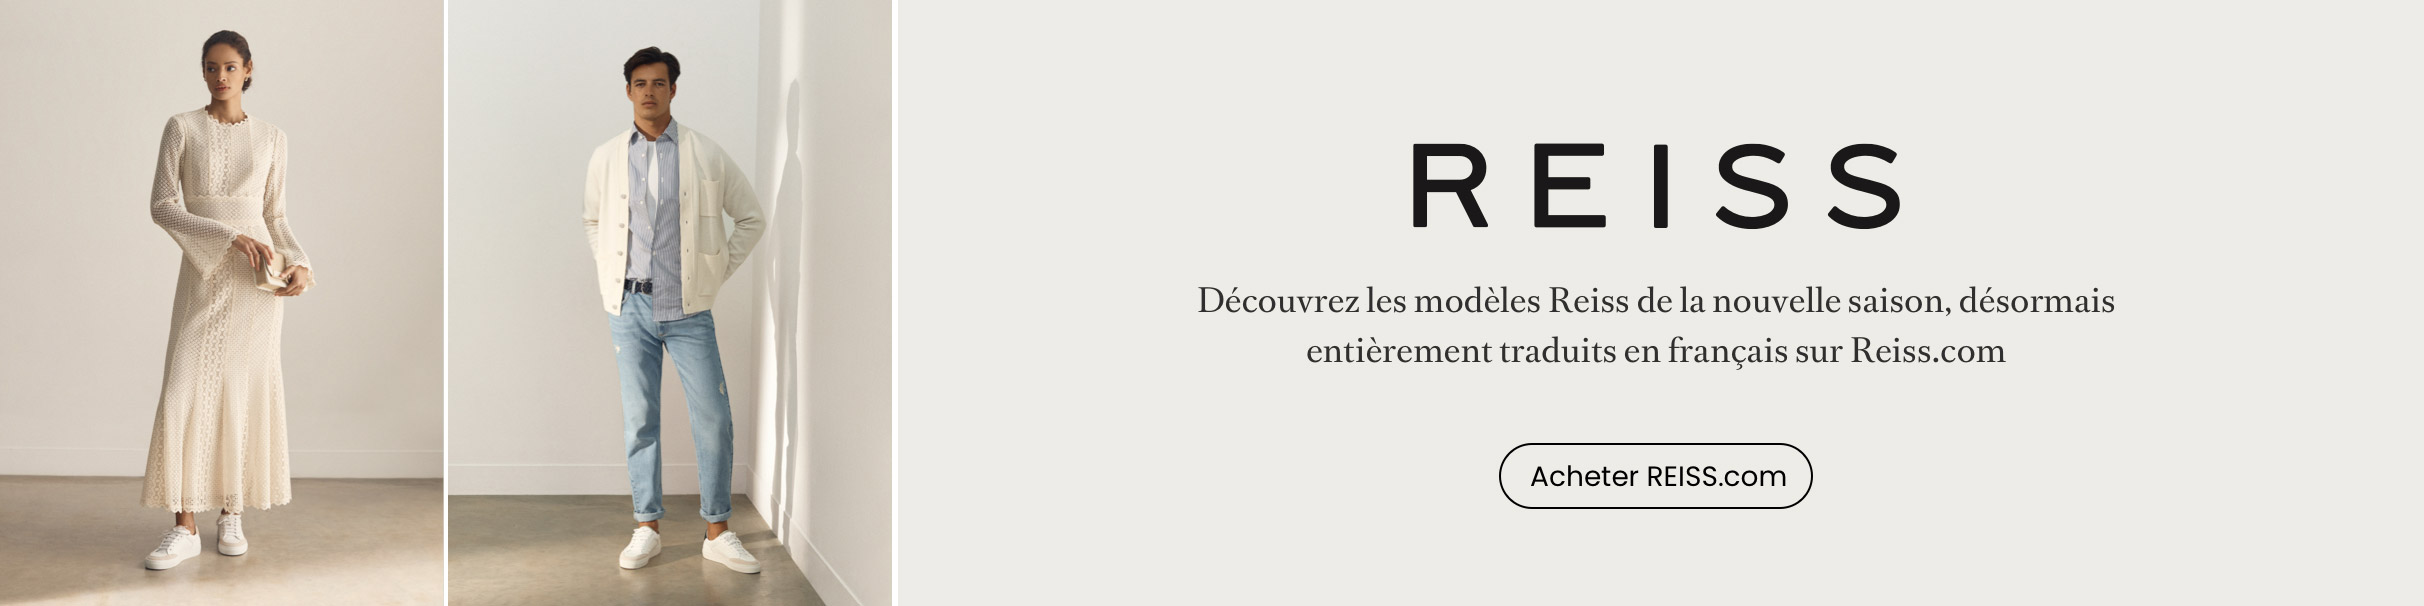 REISS-France-FR-041322-DT